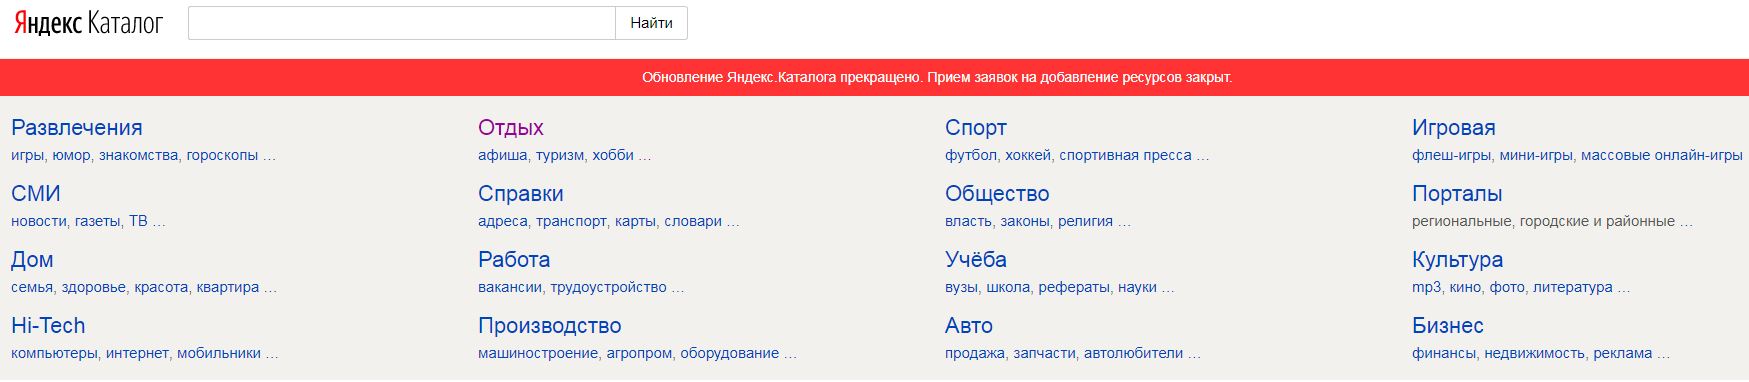 Яндекс каталог закрывается навсегда